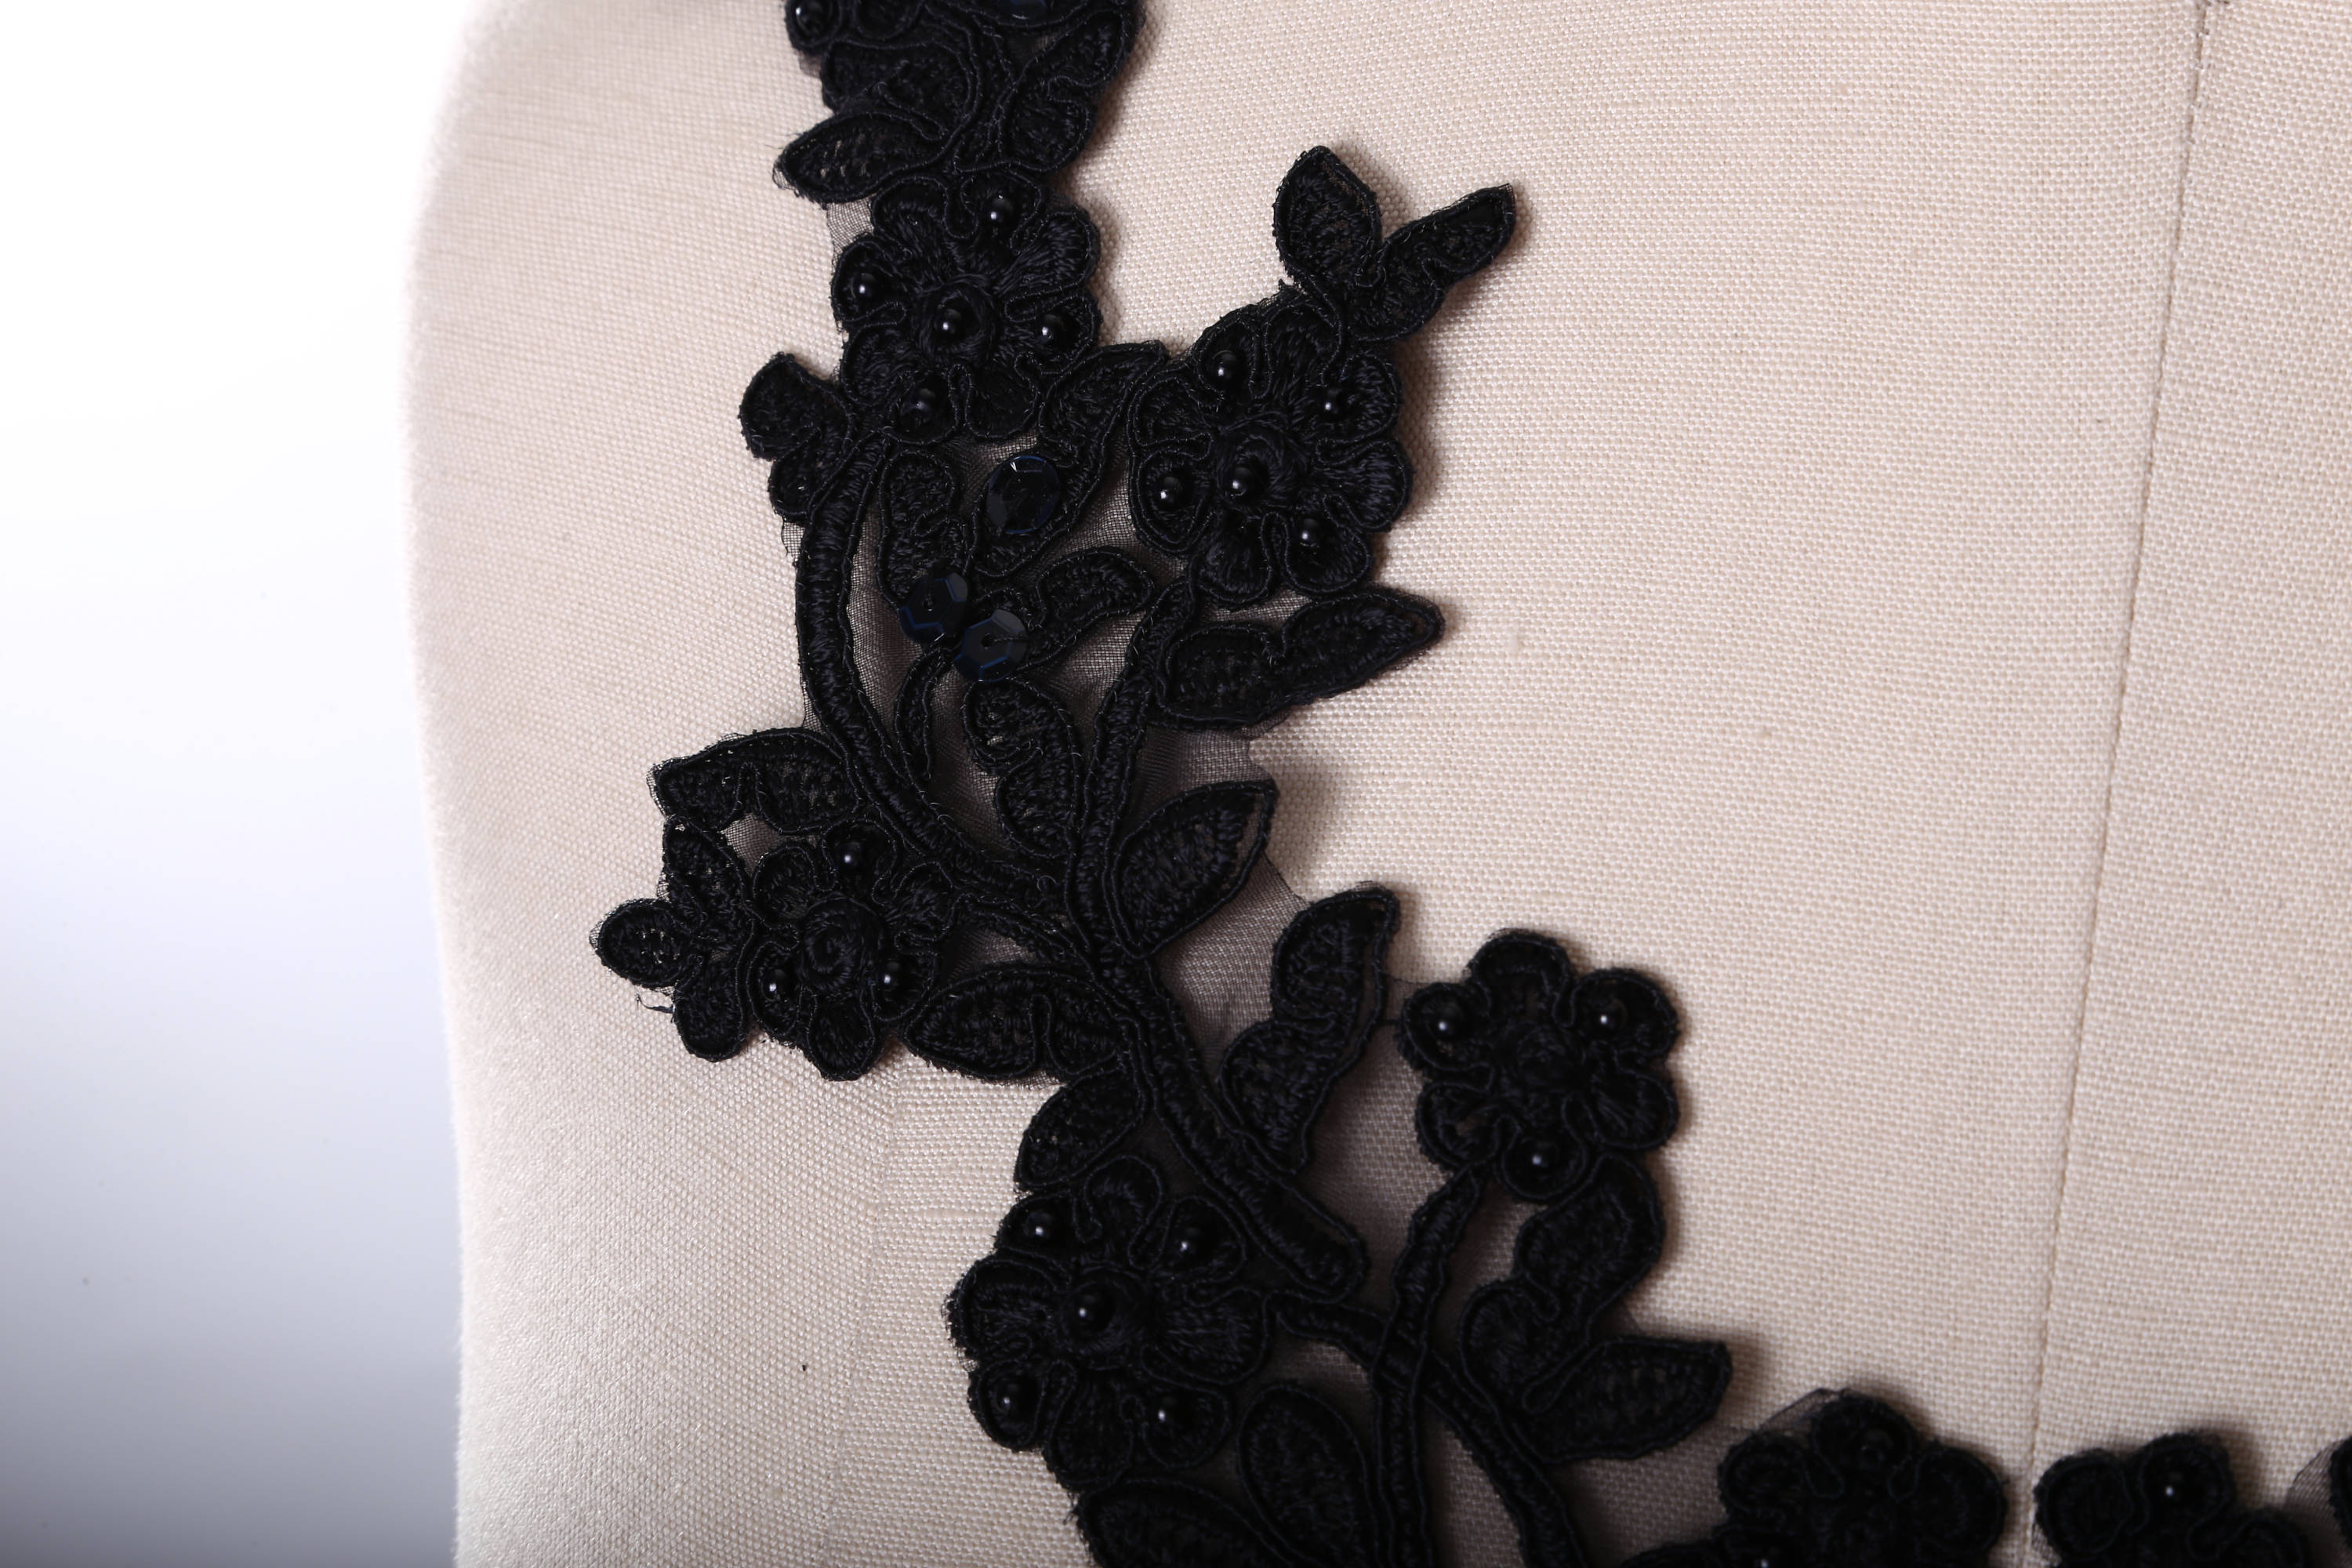 Black Applique Lace, Bodice Applique Black Trim Beaded, Black 3D Lace Flower, Lace Fabric Black Tulle for Dress BK (C3 Black)